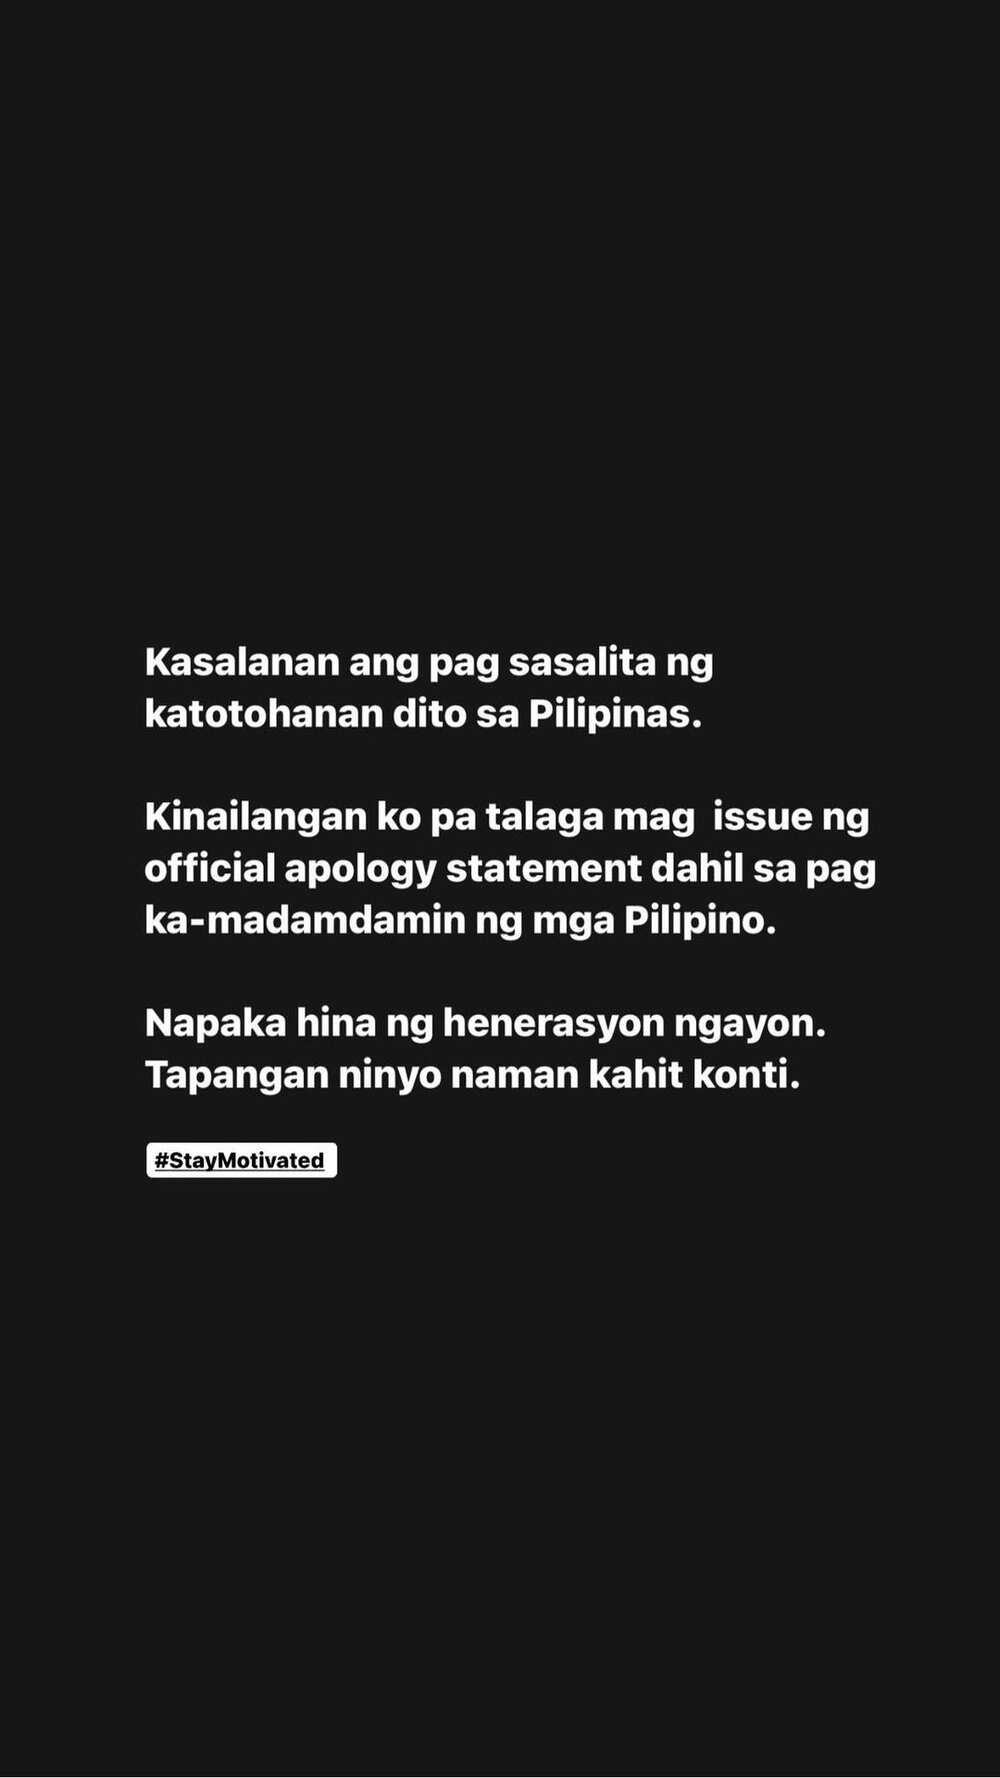 Rendon Labador, kinailangan daw mag-public apology dahil madamdamin ang mga Pinoy